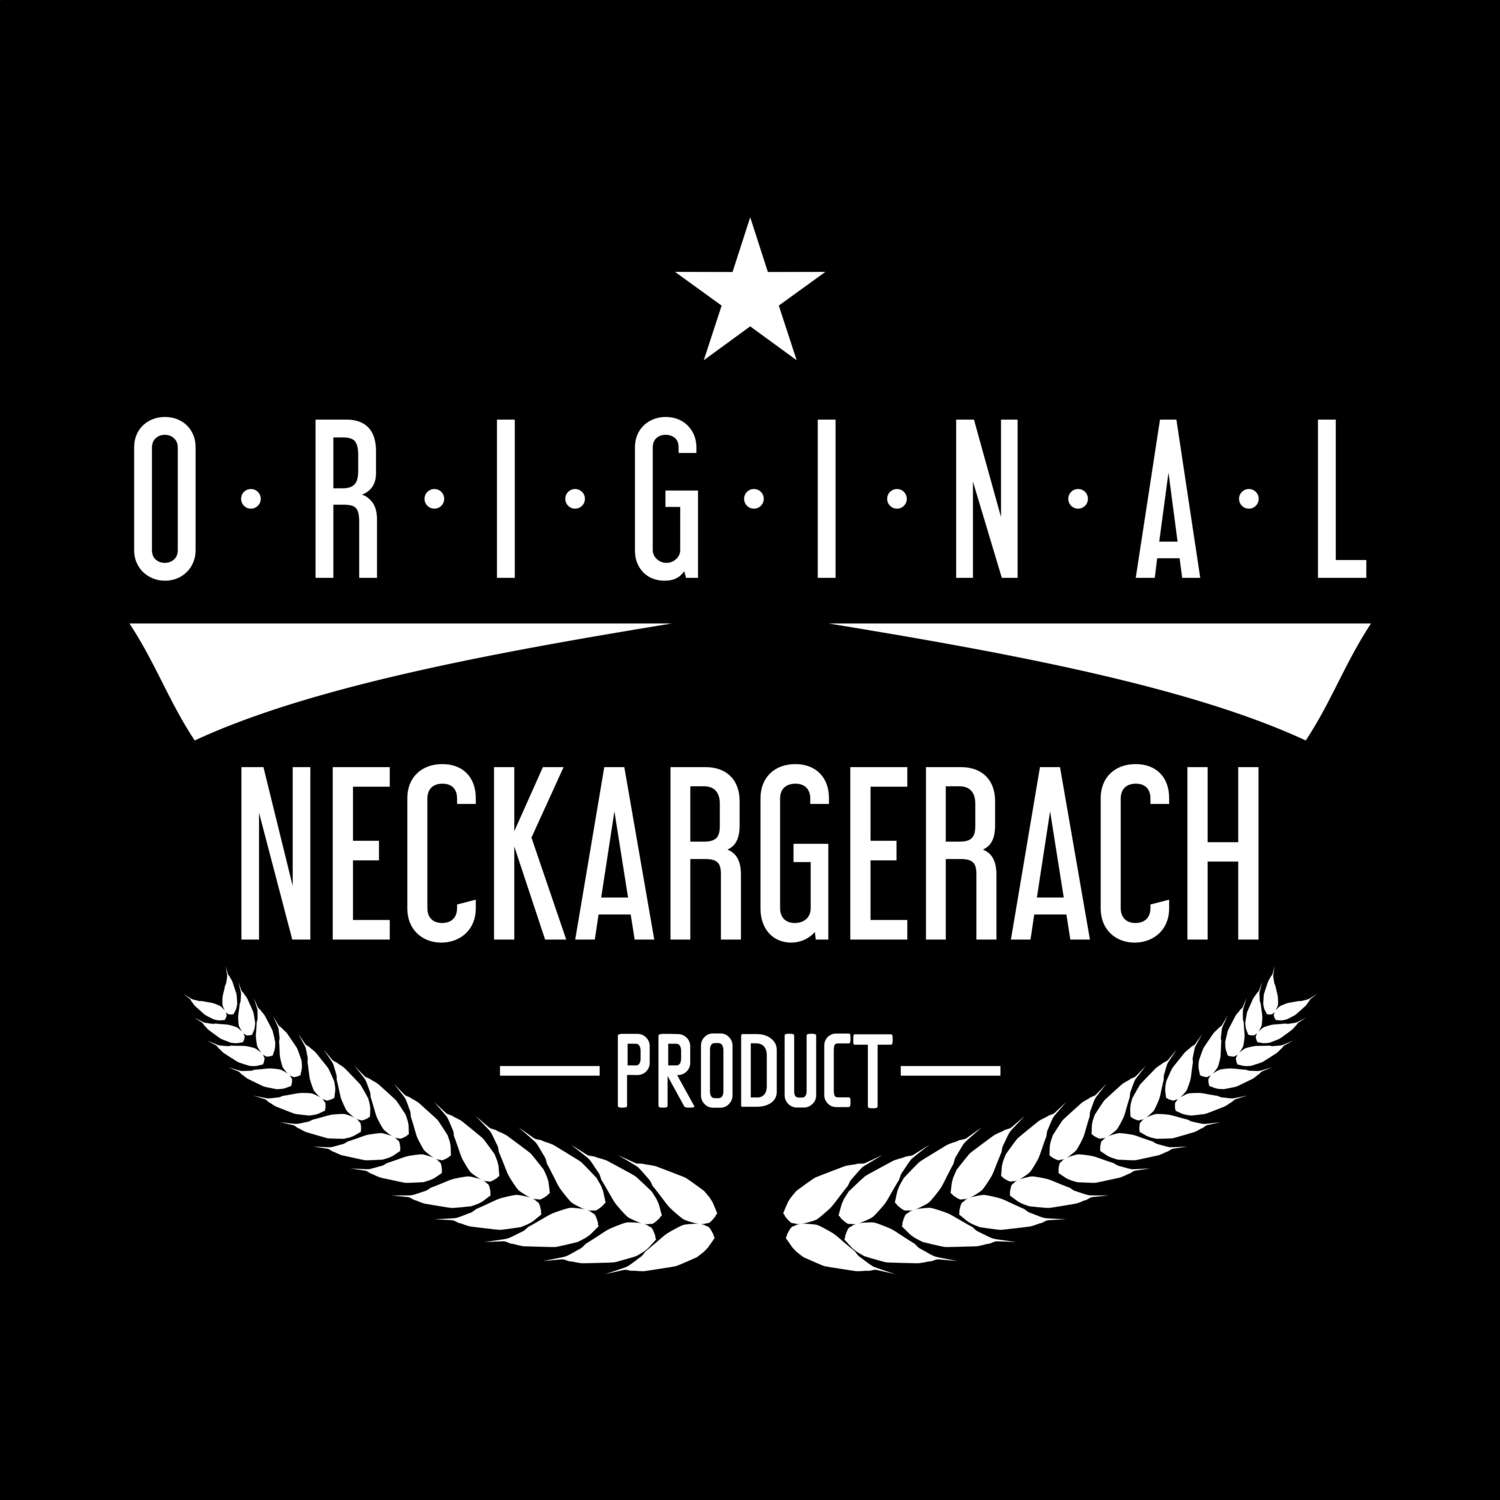 Neckargerach T-Shirt »Original Product«